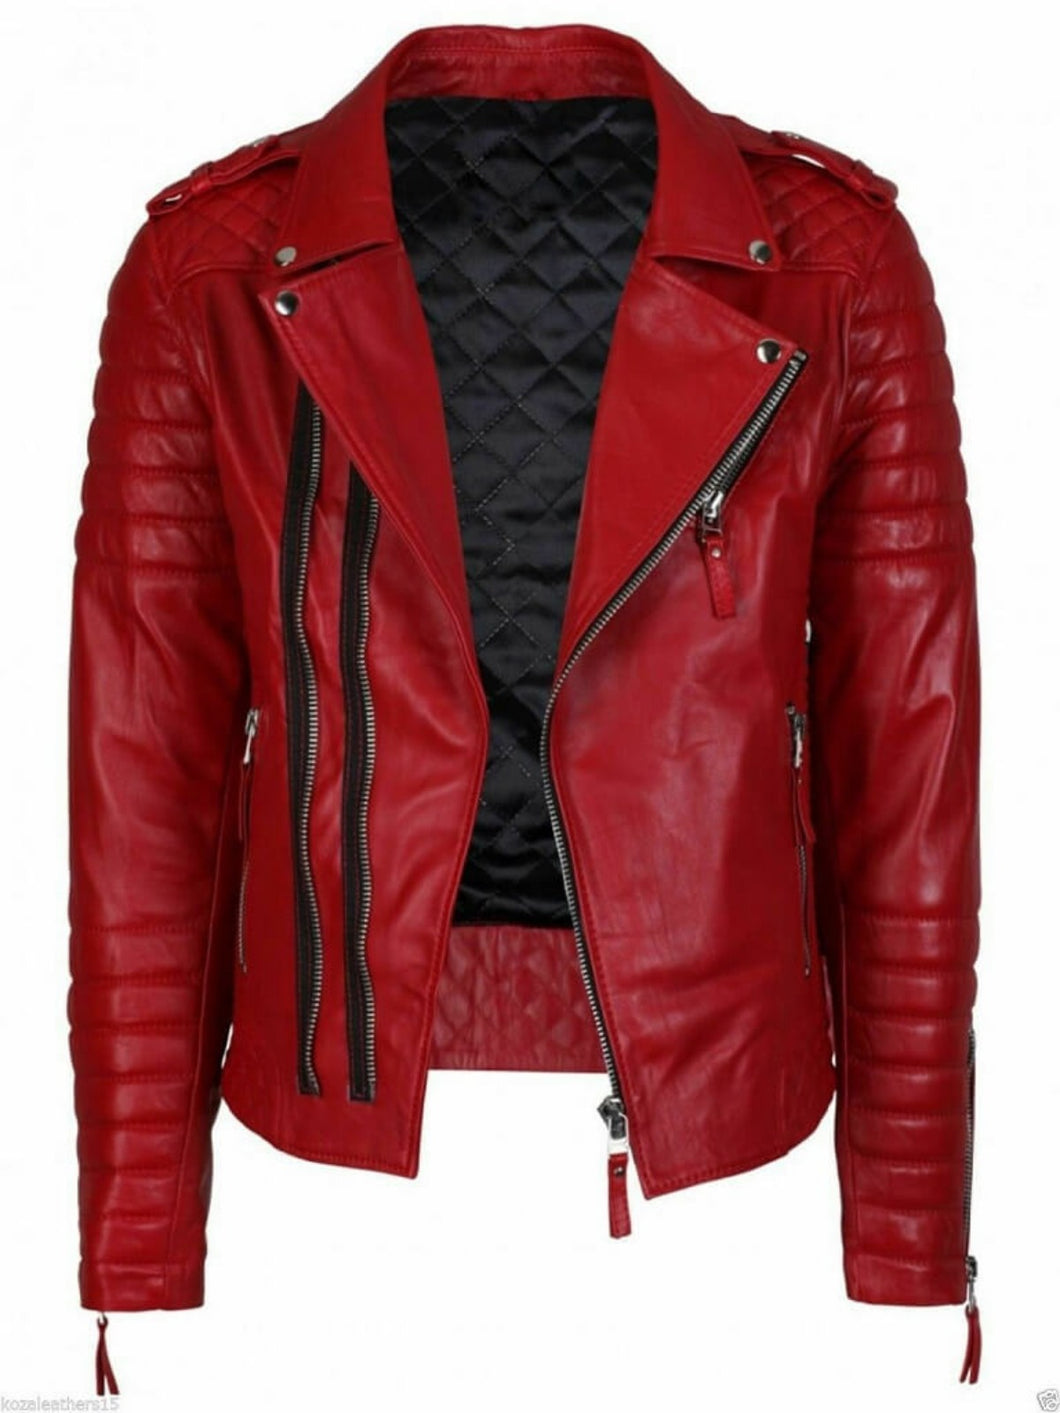 Mens Red Leather Biker Jacket